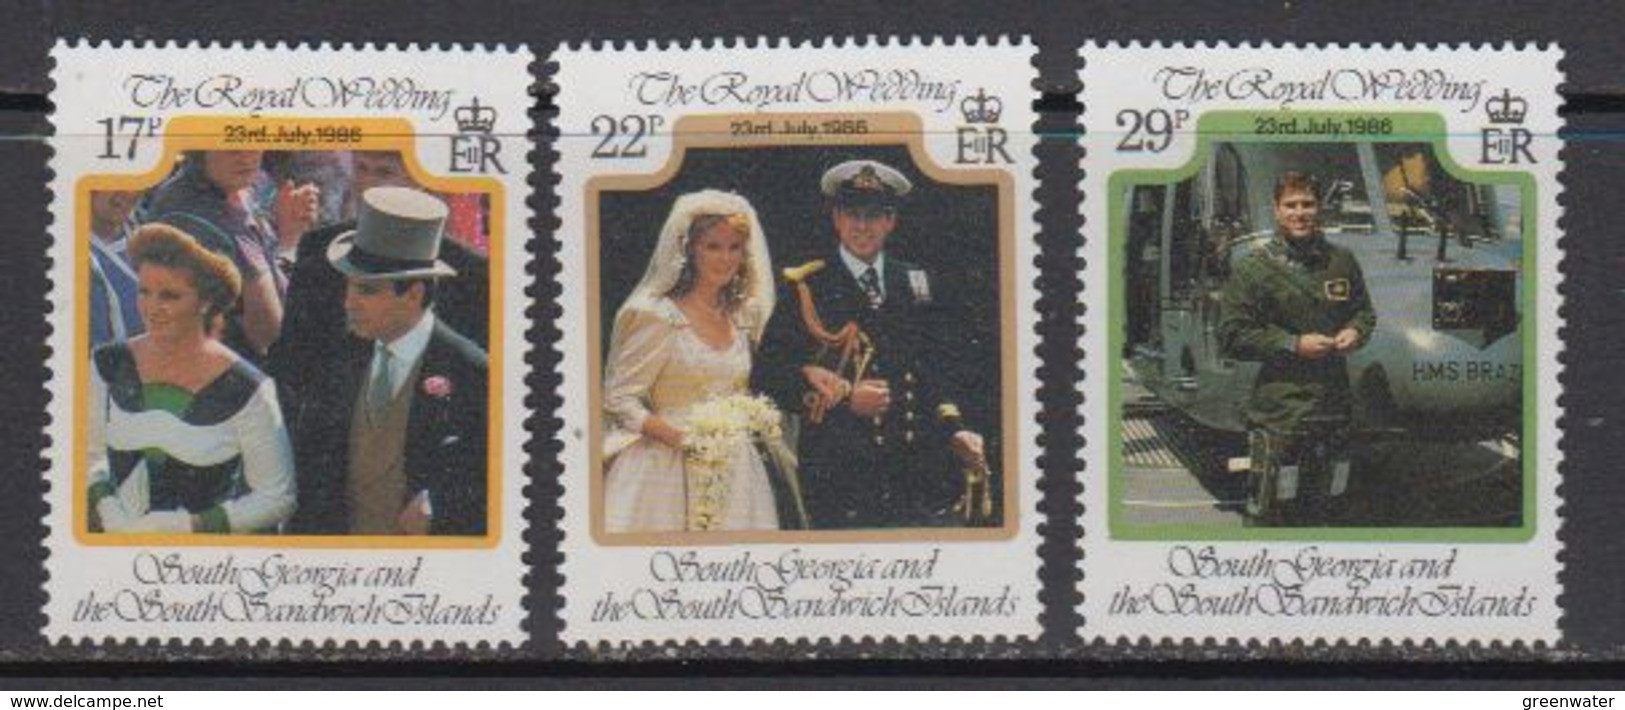 Falkland Islands Dependencies (FID) 1986 Royal Wedding Of Prince Andrew 3v ** Mnh (59821) - Südgeorgien